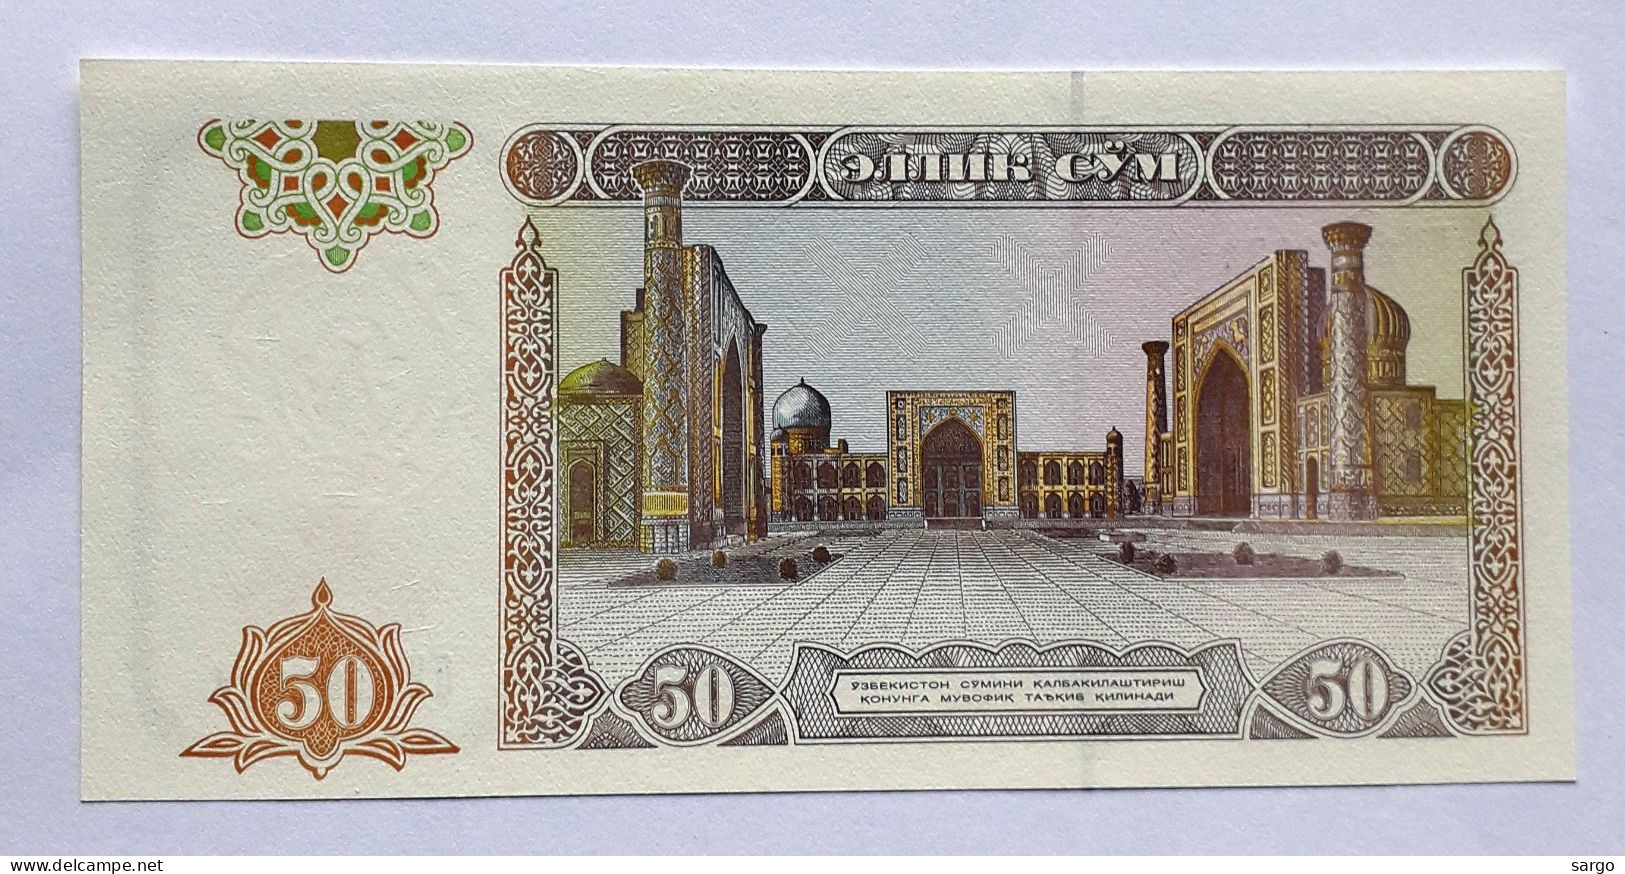 UZBEKISTAN  - 50 SO'M - P 78  (1994) - UNC - BANKNOTES - PAPER MONEY - CARTAMONETA - - Ouzbékistan